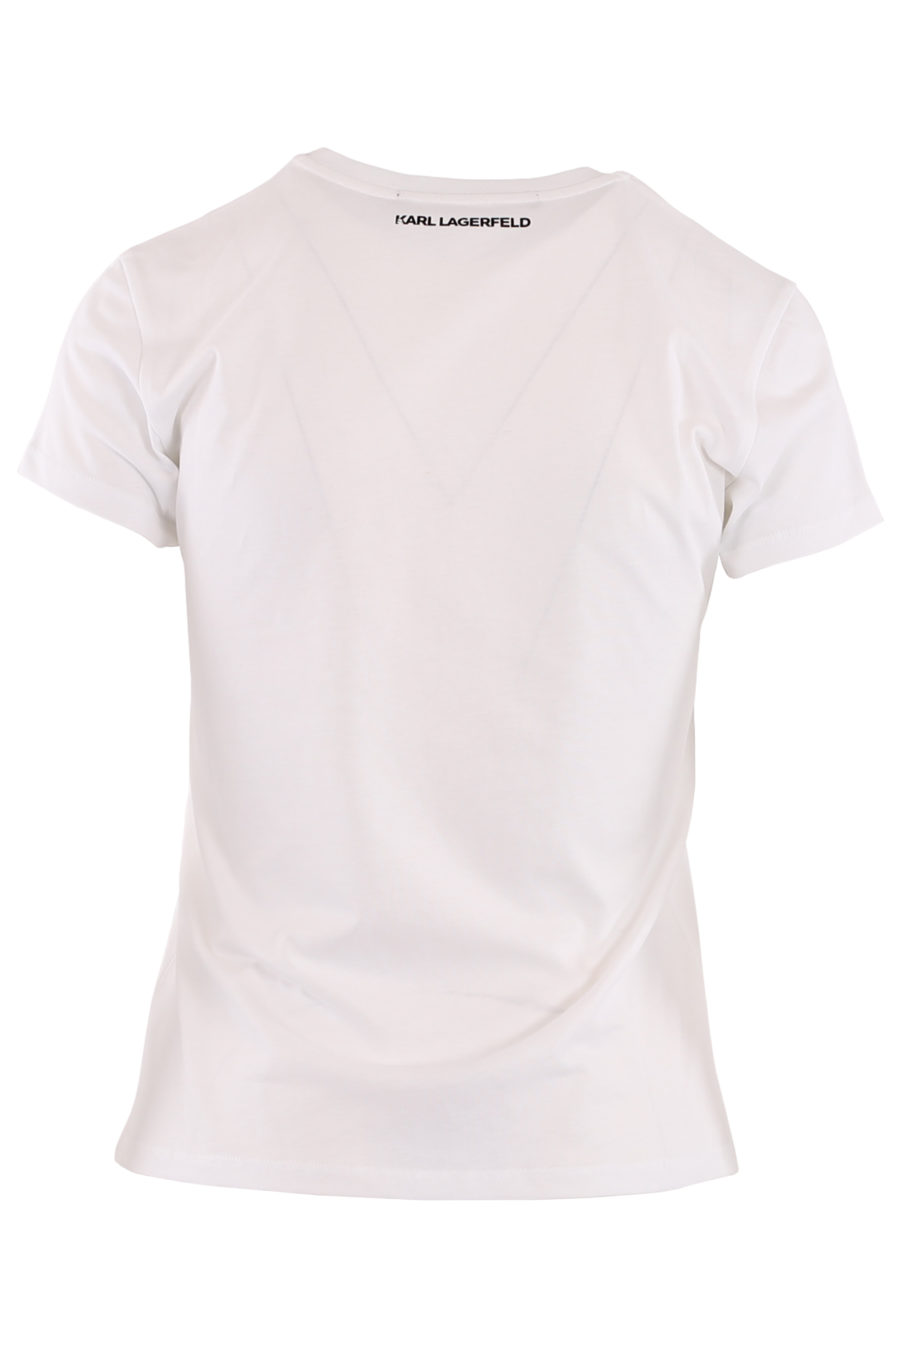 Camiseta blanca con "Choupette" - 486504977126b86bfd9d9eb5714e3b2aa5d31ad9